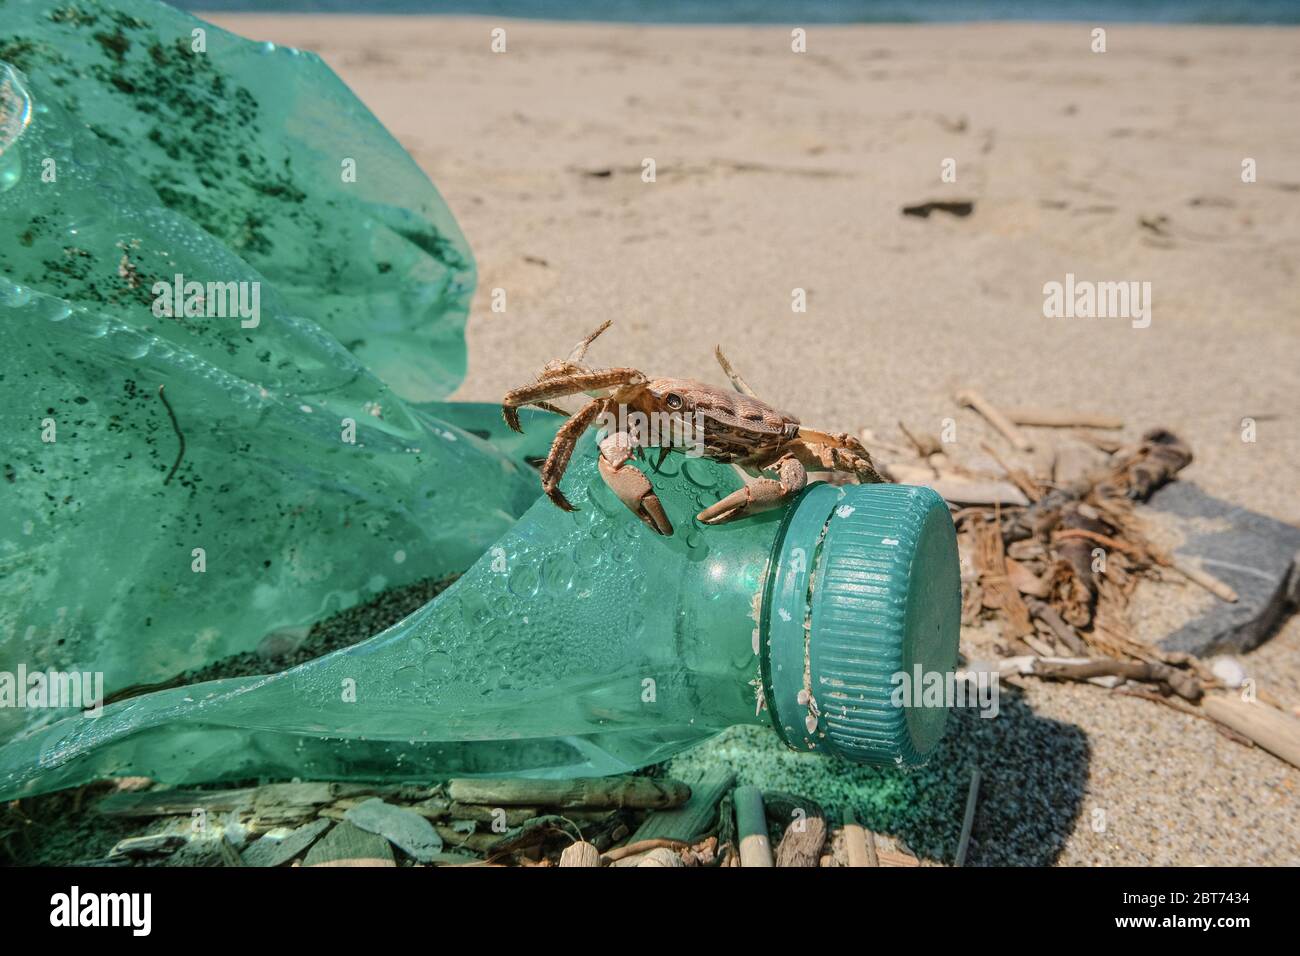 Granchio marino su bottiglia di plastica scaricata su habitat inquinato della costa marina Foto Stock